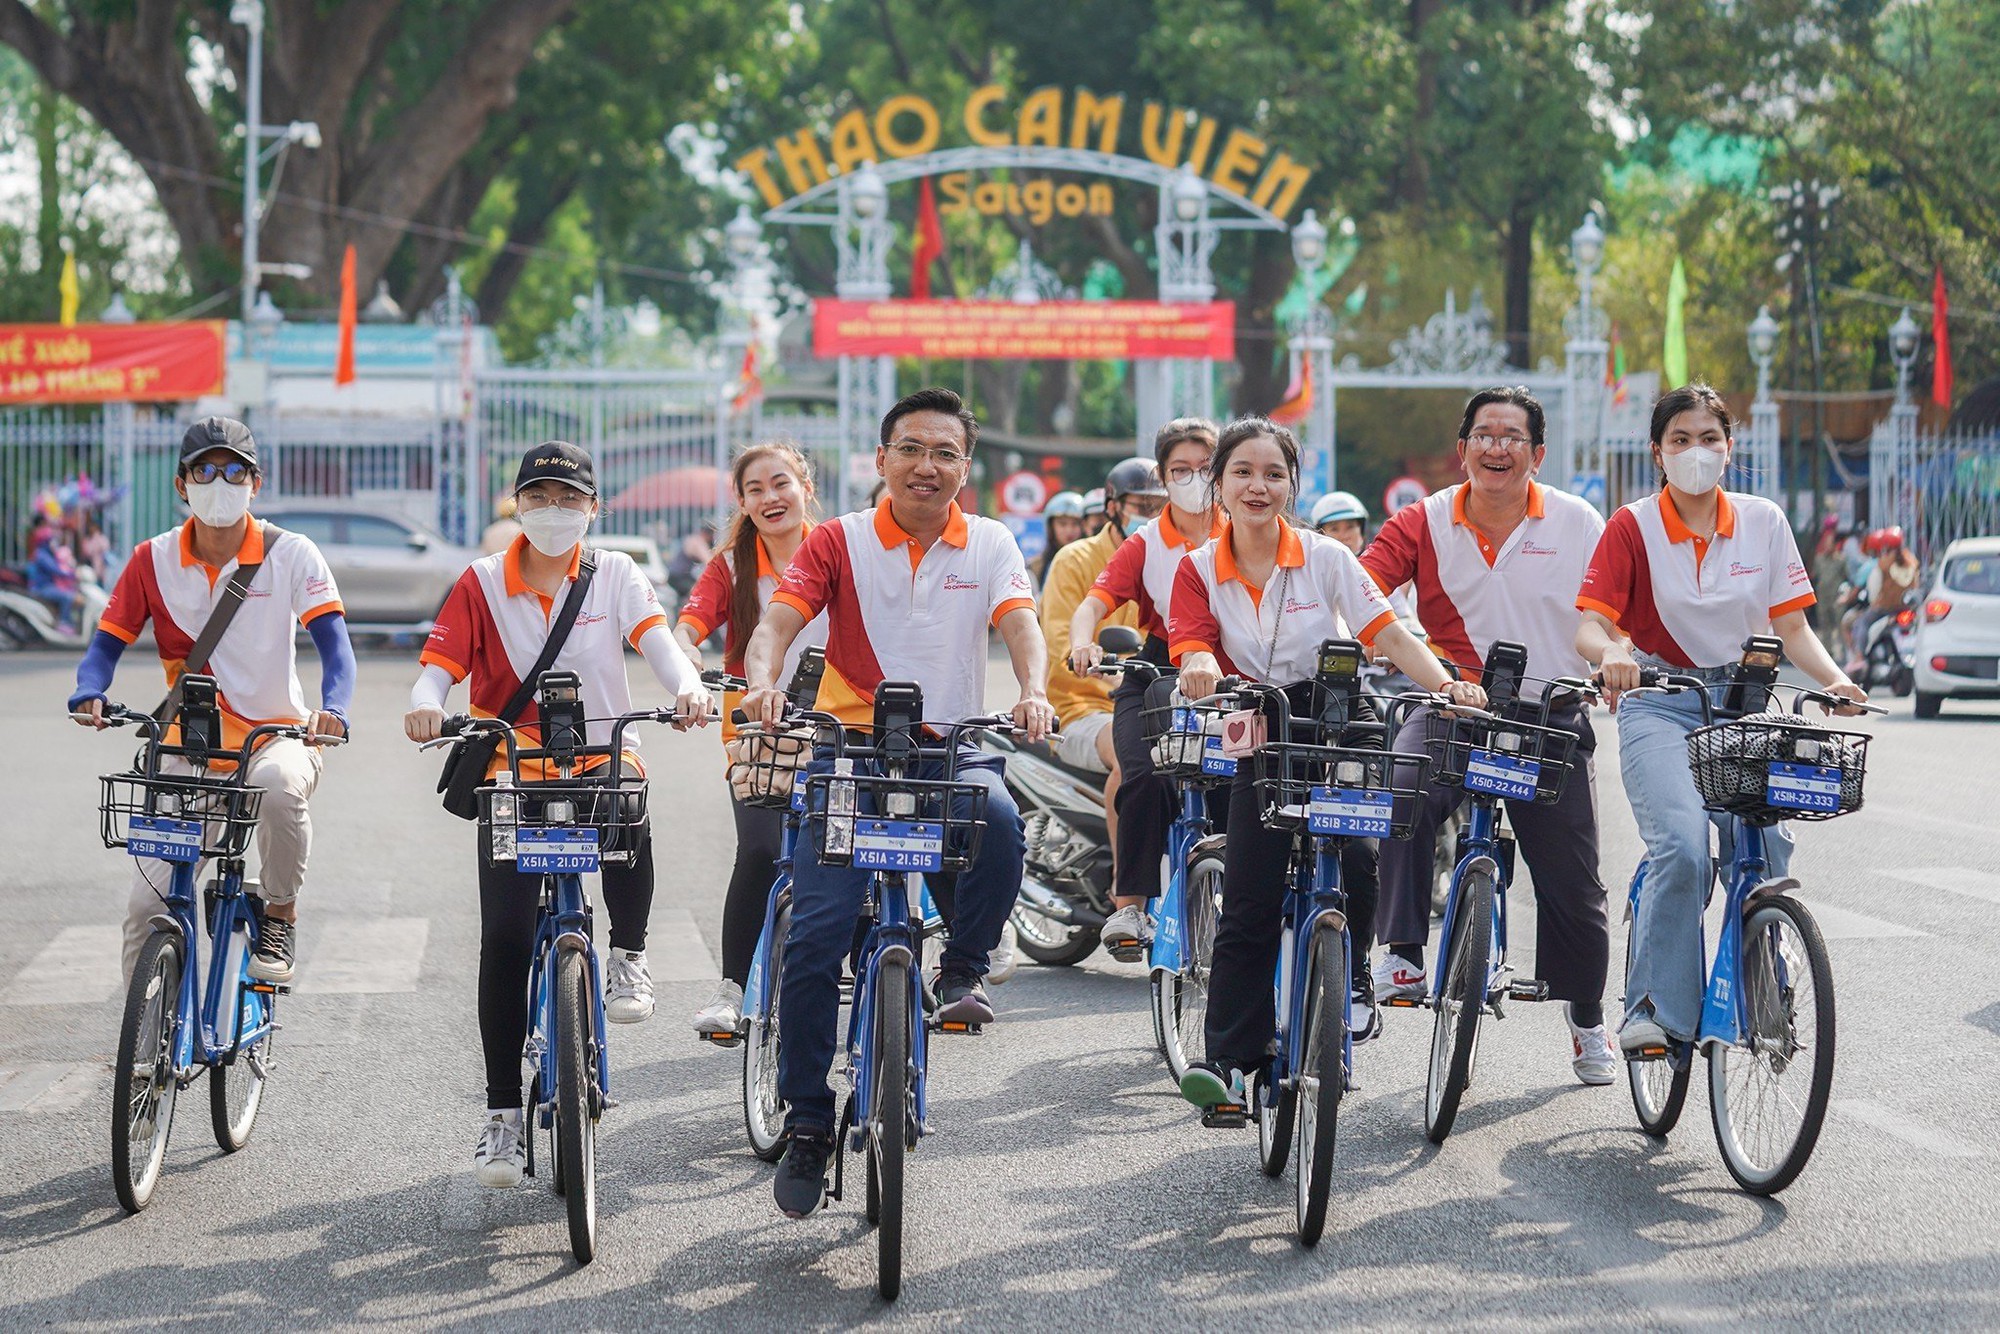 Người dân TP.HCM diễu hành xe đạp qua các điểm check-in nổi tiếng mừng lễ 30.4 - Ảnh 2.